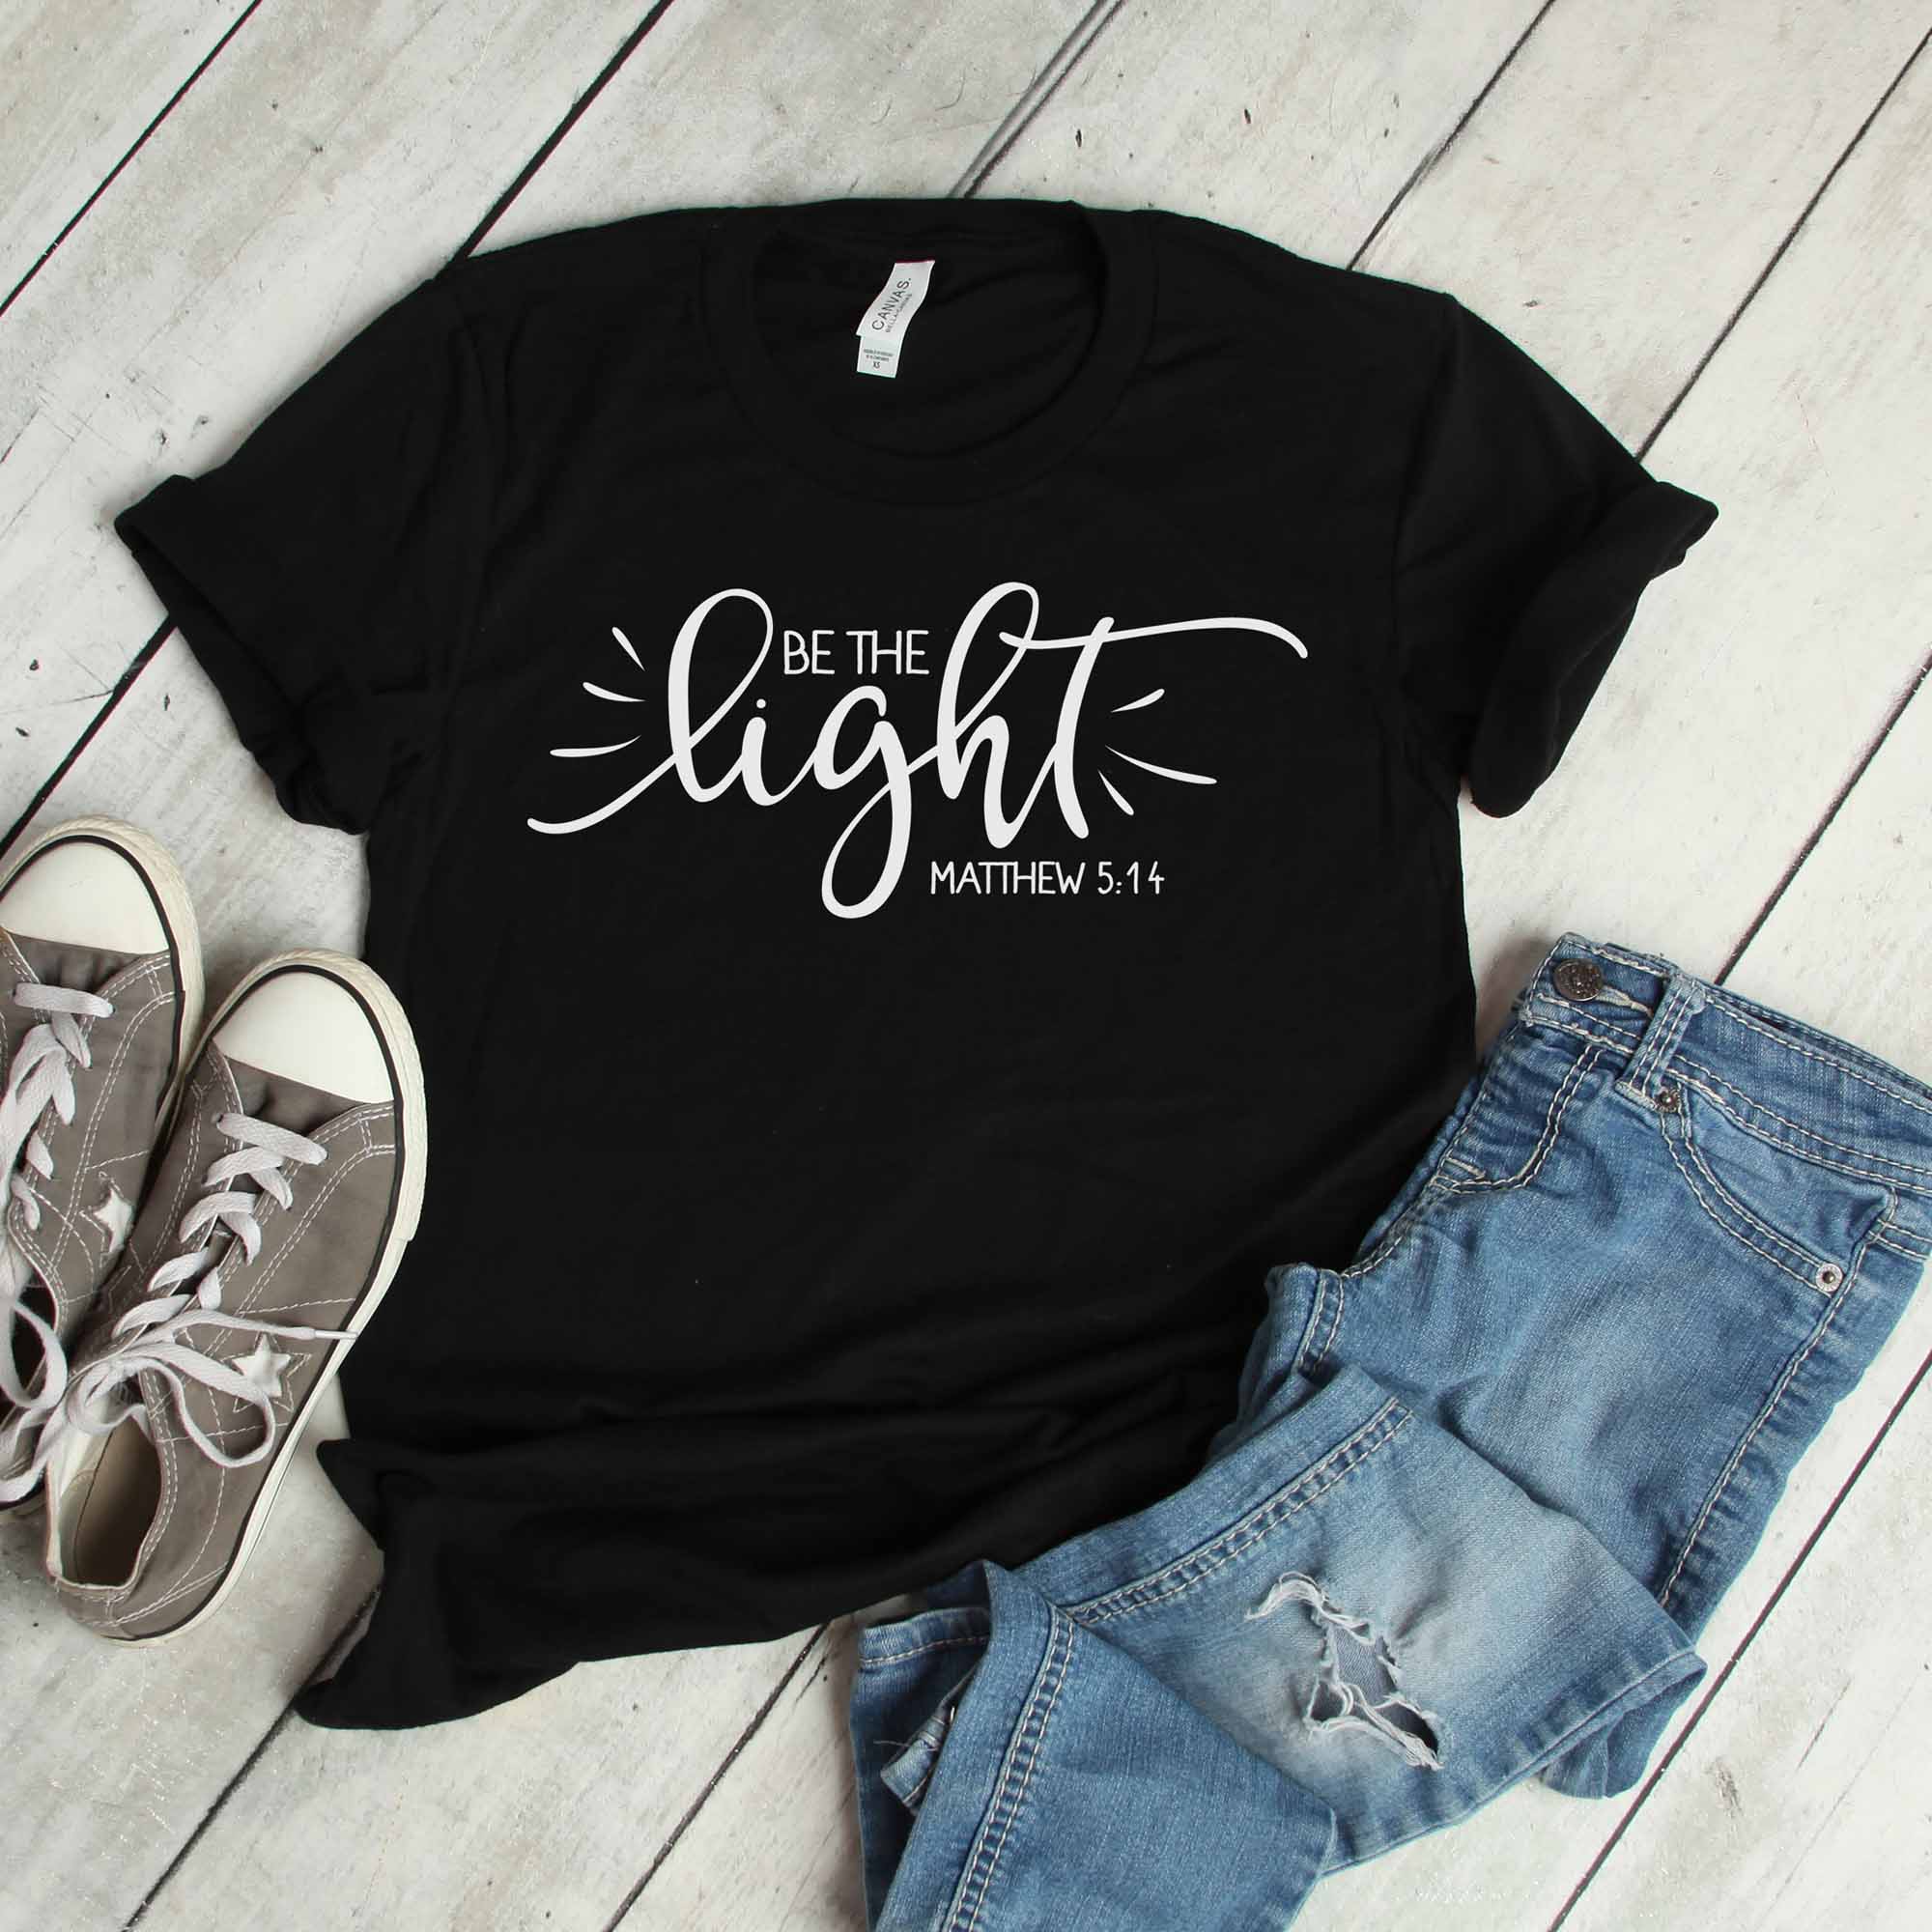 Be the Light T-Shirt - Matthew 5:14